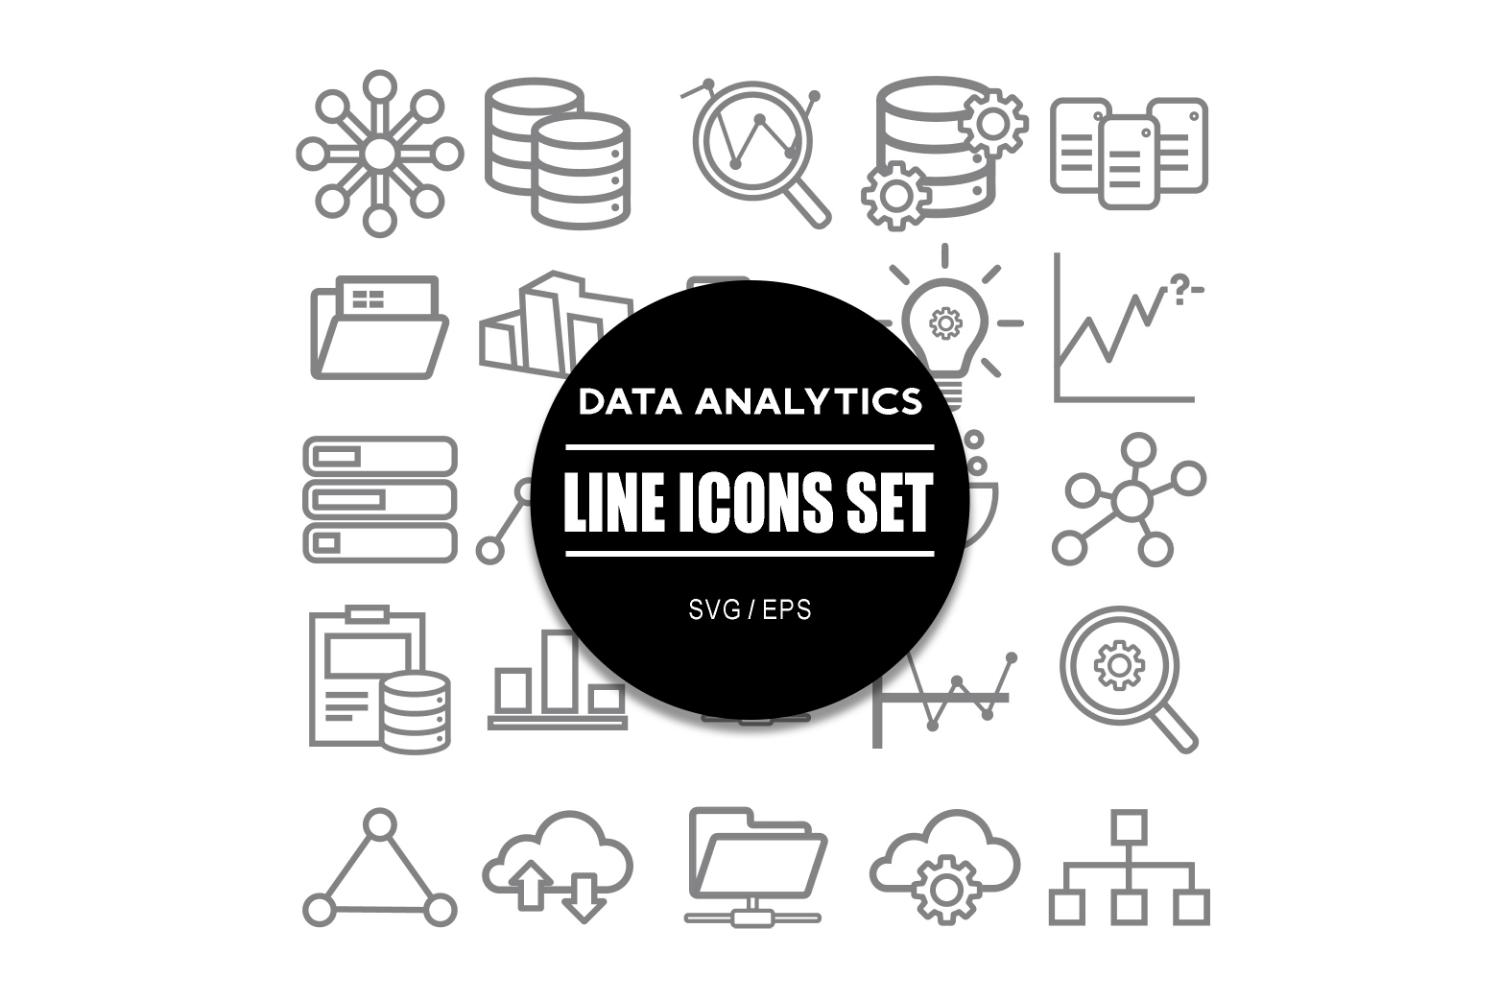 Data Analytics Icon Set Icons Bundle